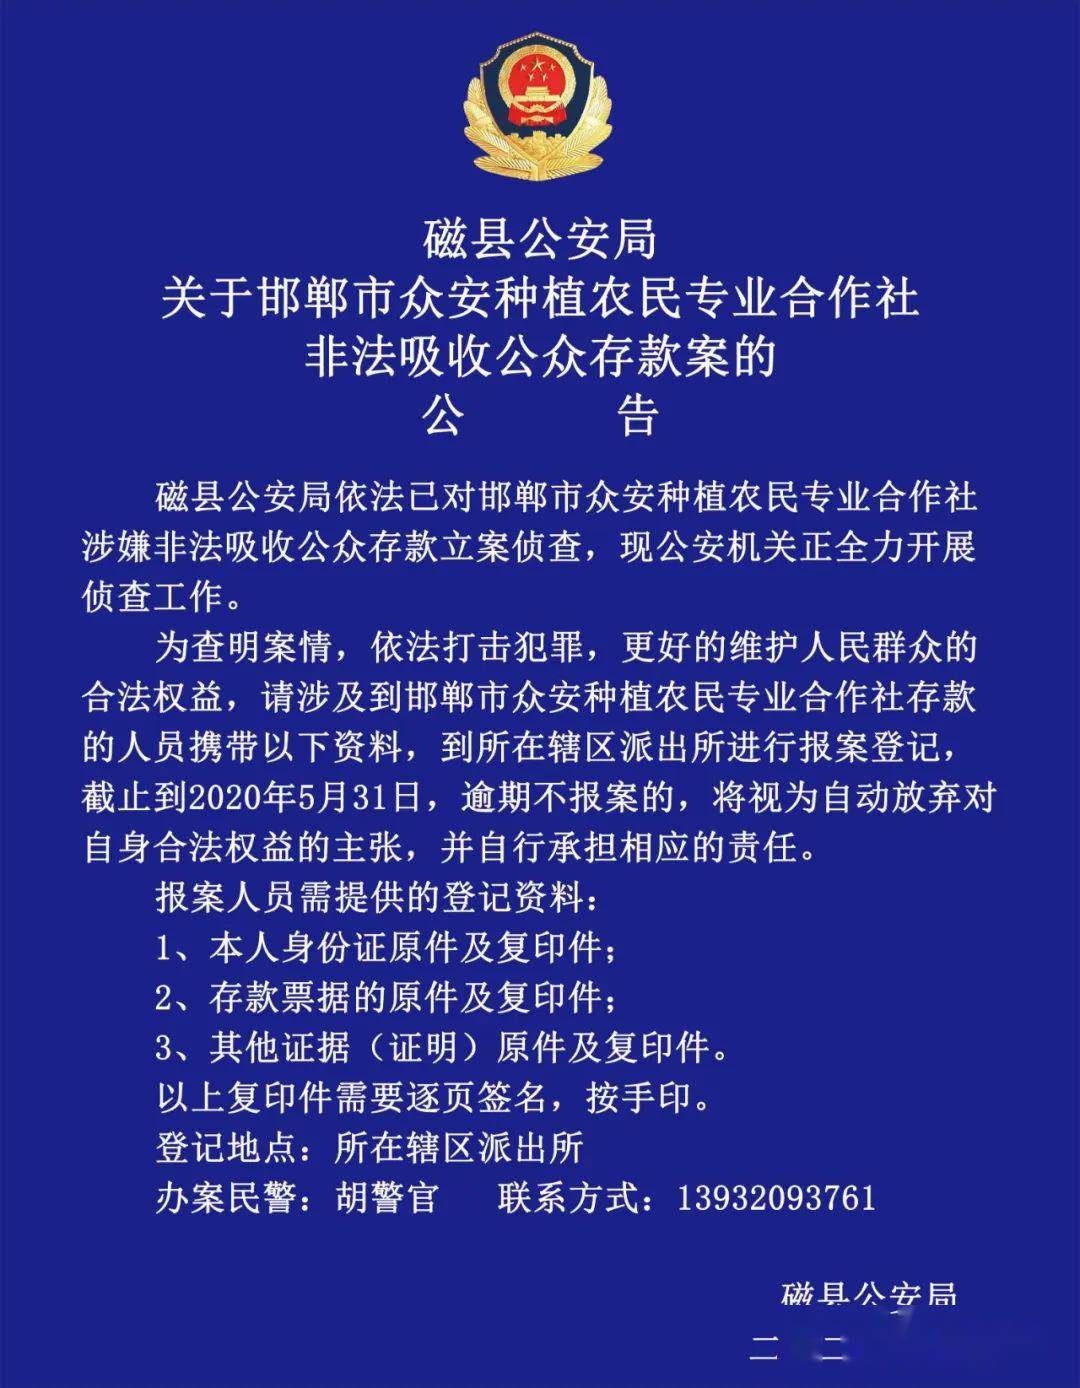 关于邯郸市众安种植农民专业合作社非法吸收公众存款案的公告